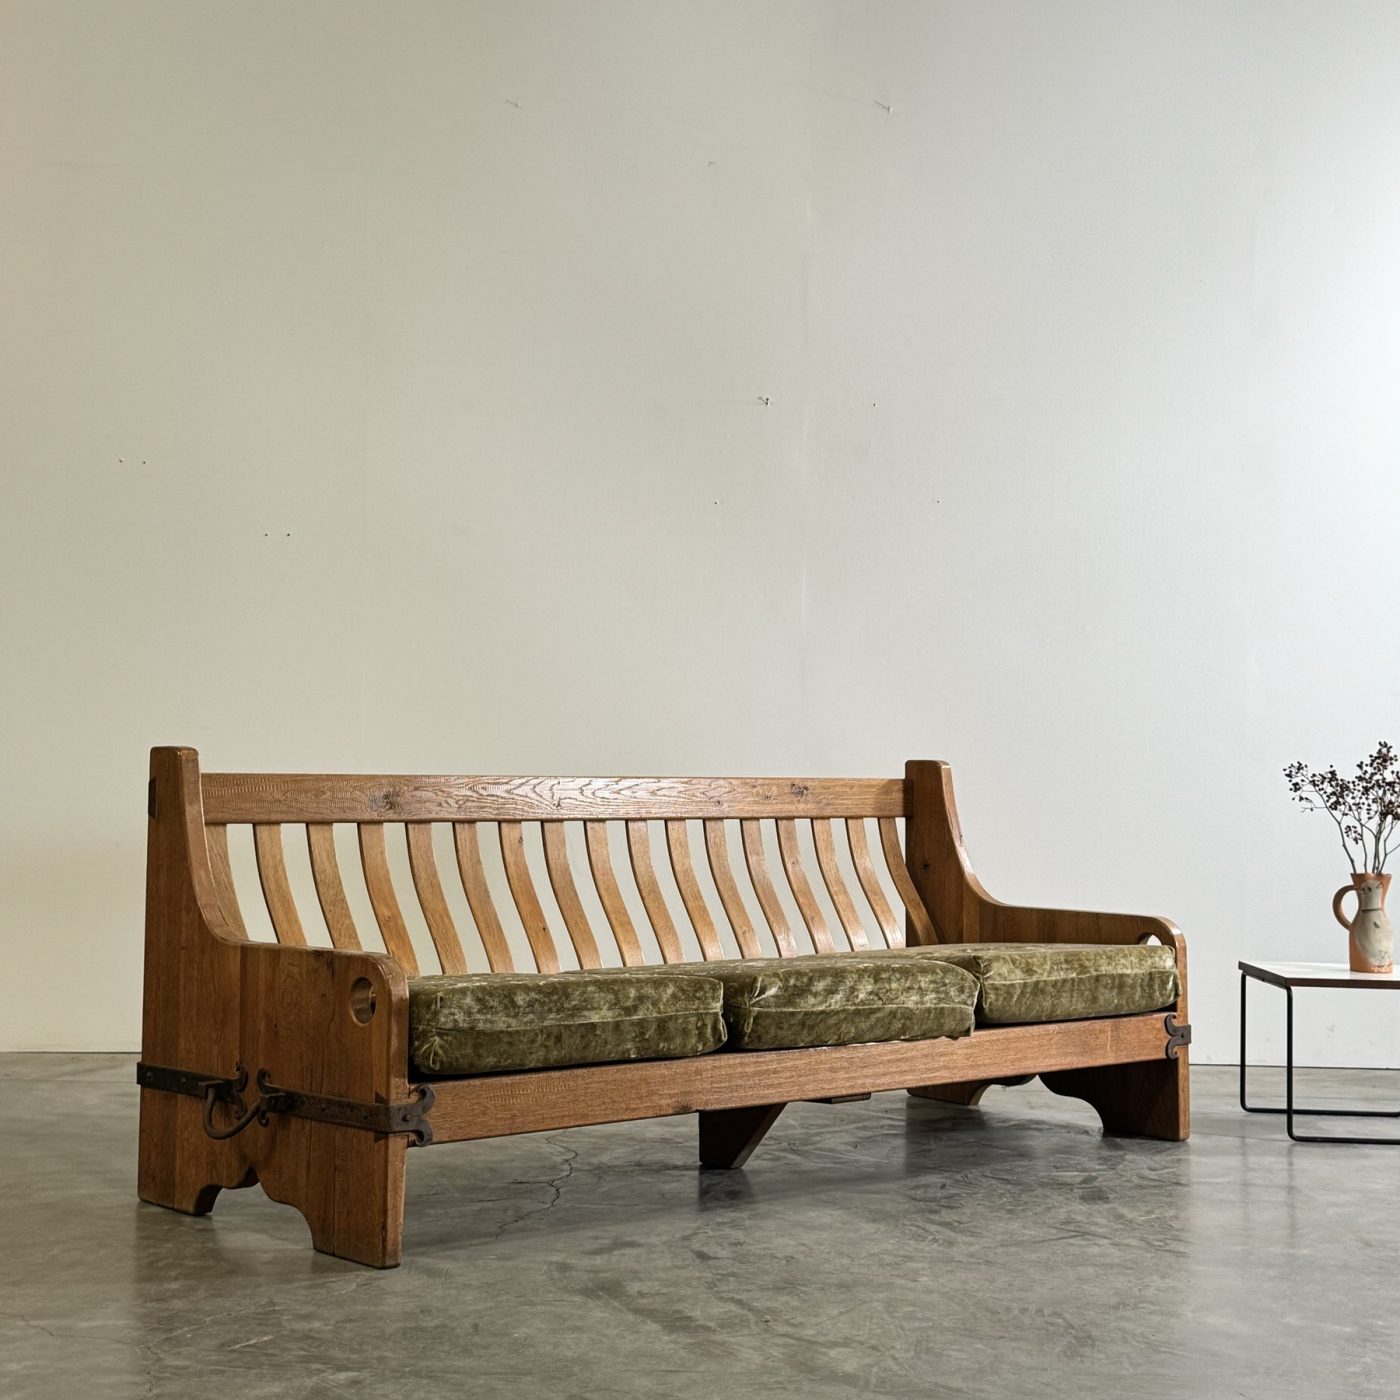 objet-vagabond-oak-sofa0004